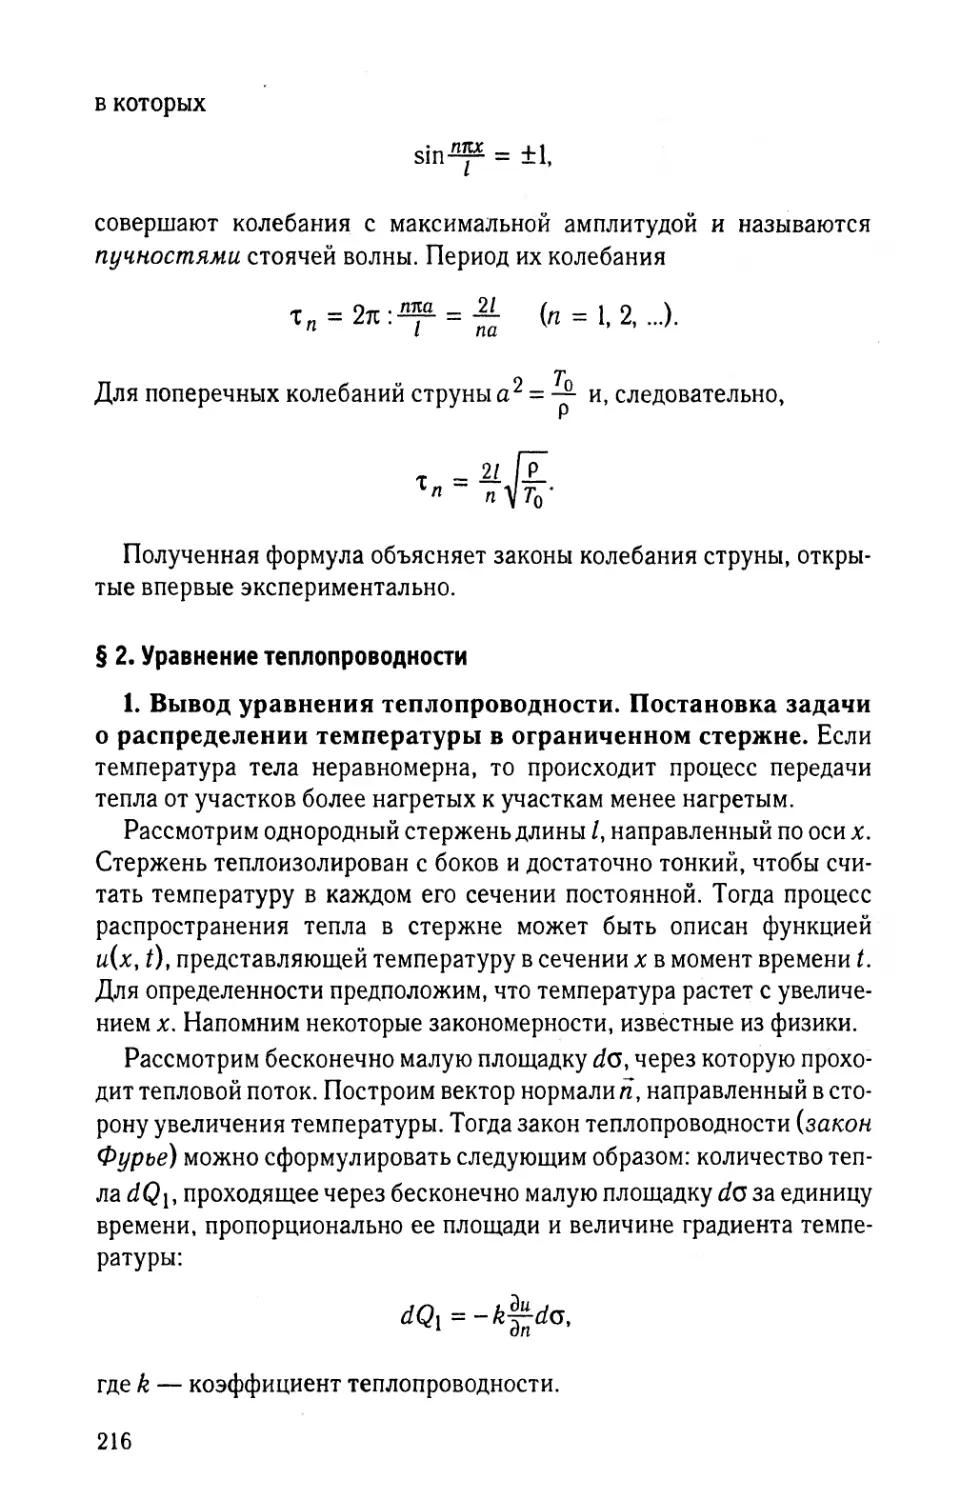 § 2. Уравнение теплопроводности